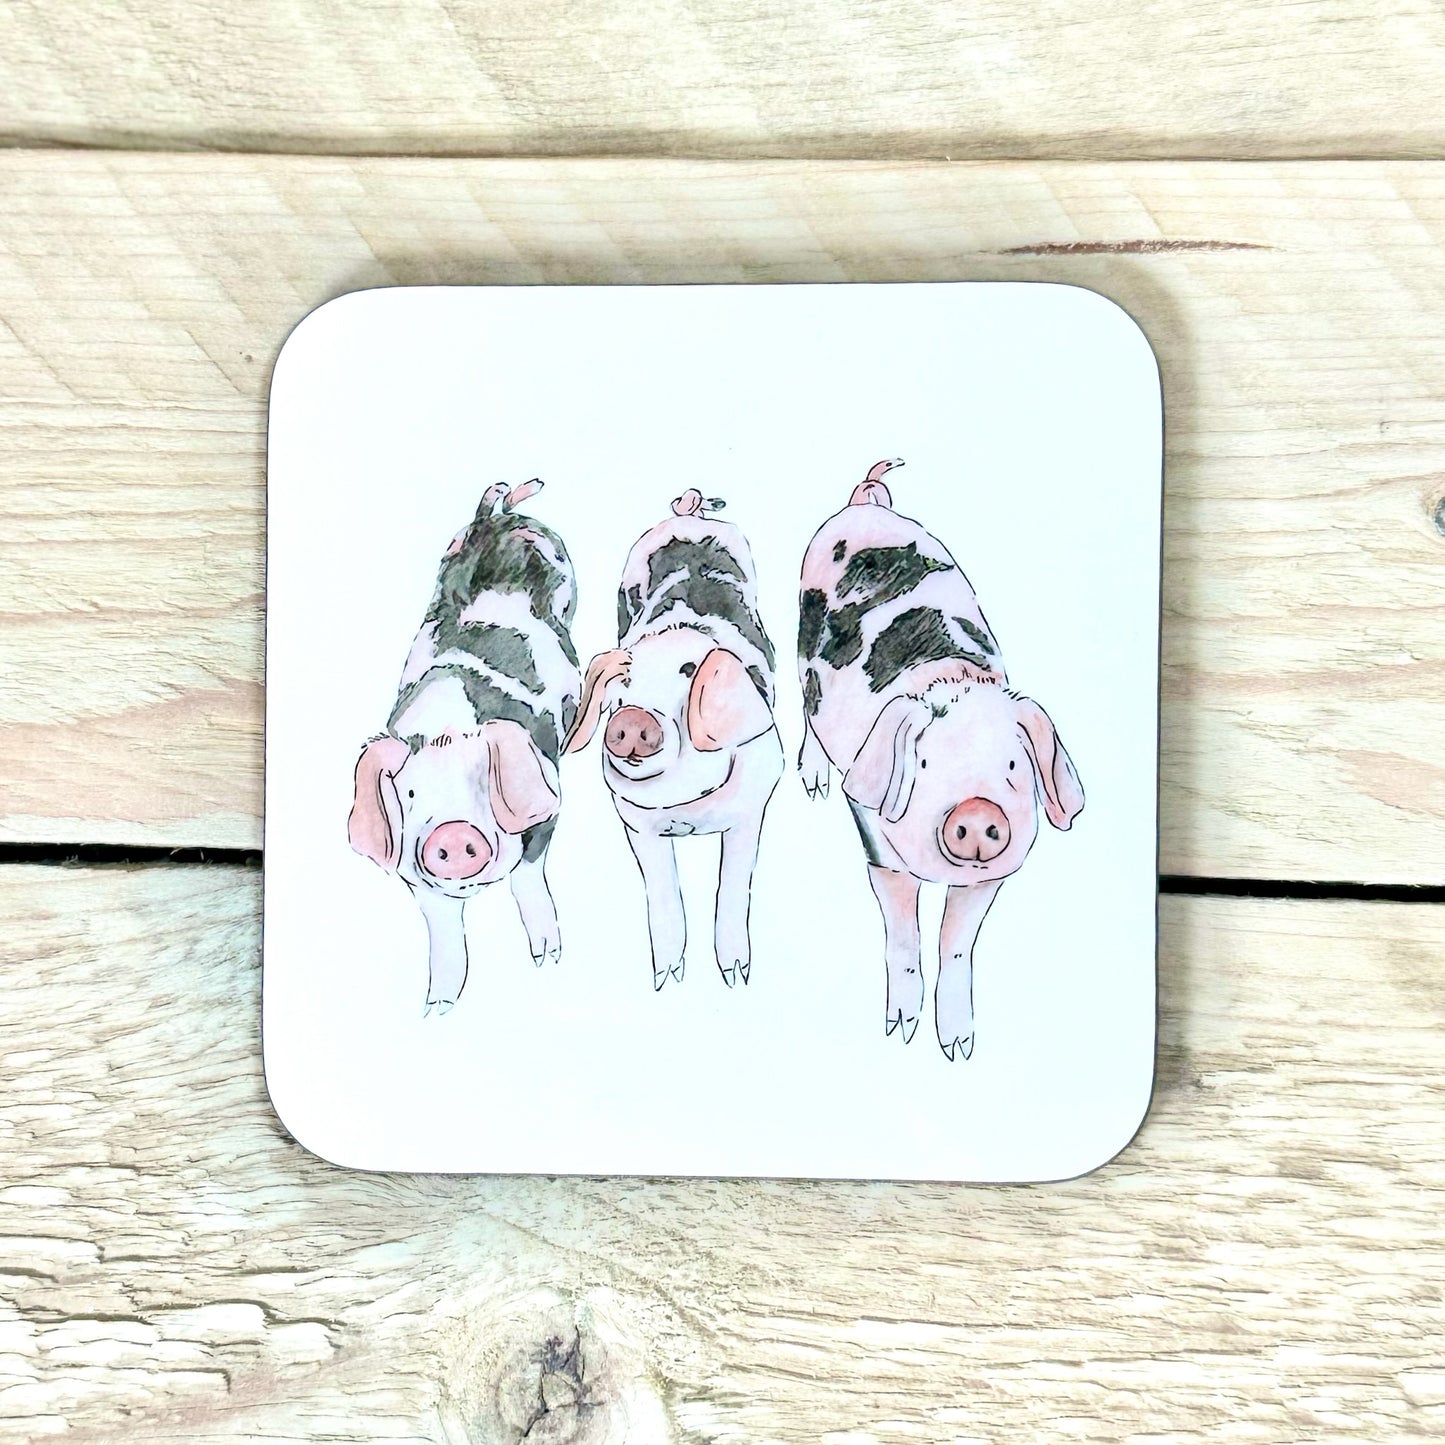 Grunt, Oink and Squeak Piggies Coaster